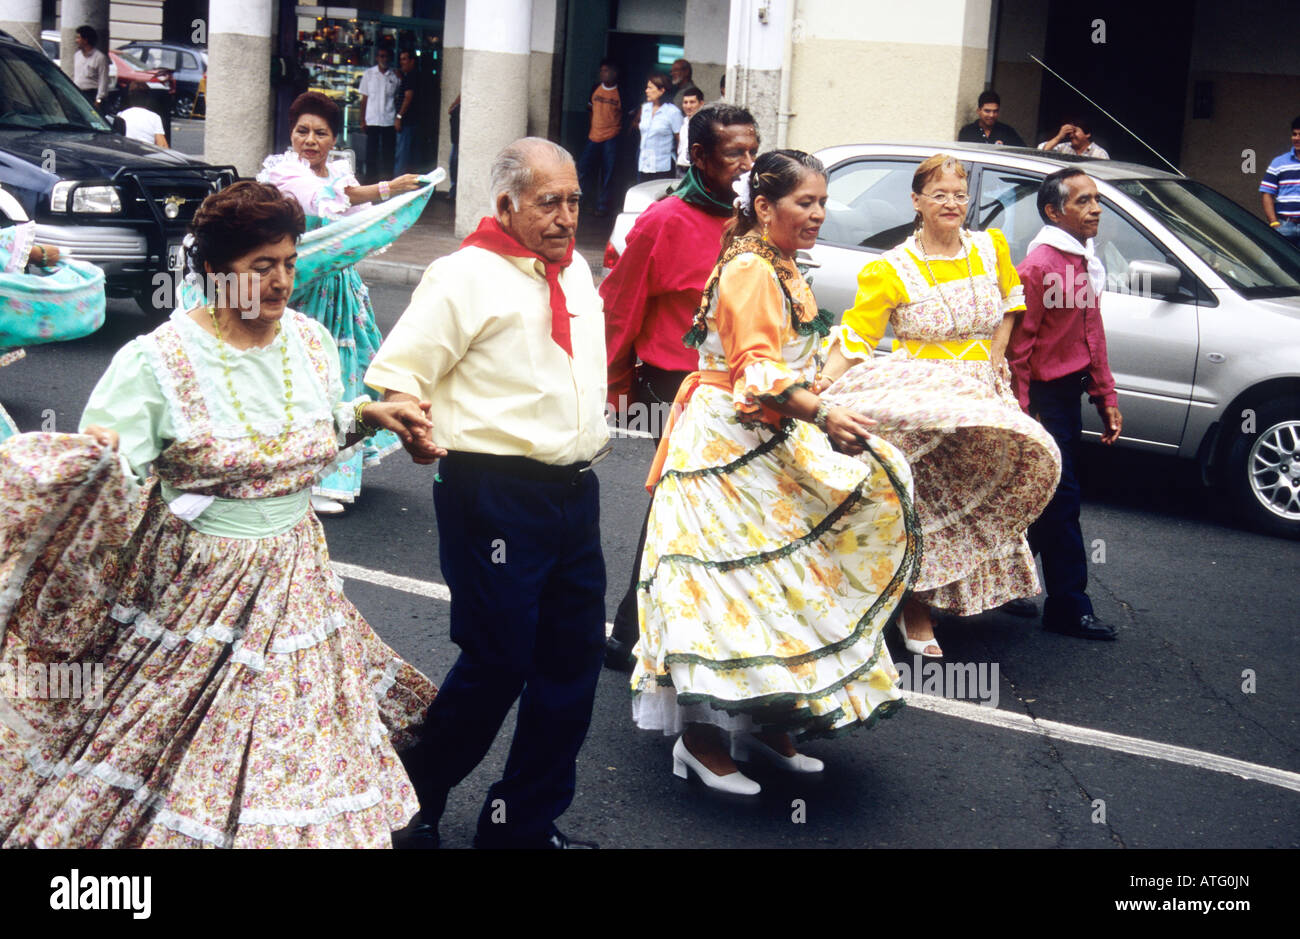 Procession de personnes, portant des vêtements de couleur vive, en dansant dans la rue à Guayaquil. L'Équateur. Banque D'Images